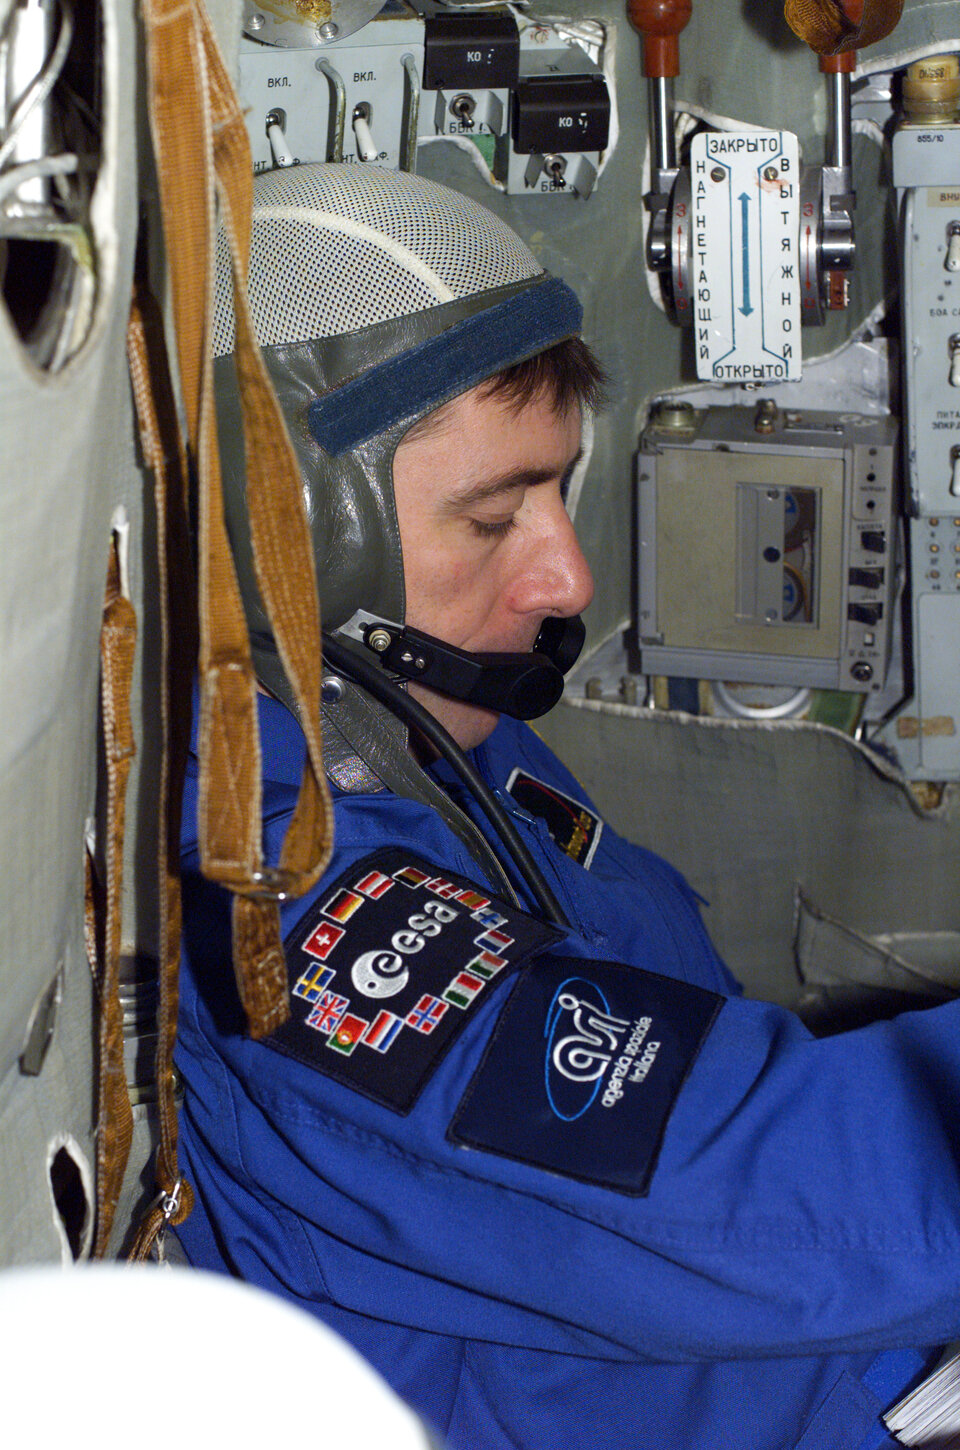 Flight training in the Soyuz simulator at Star City